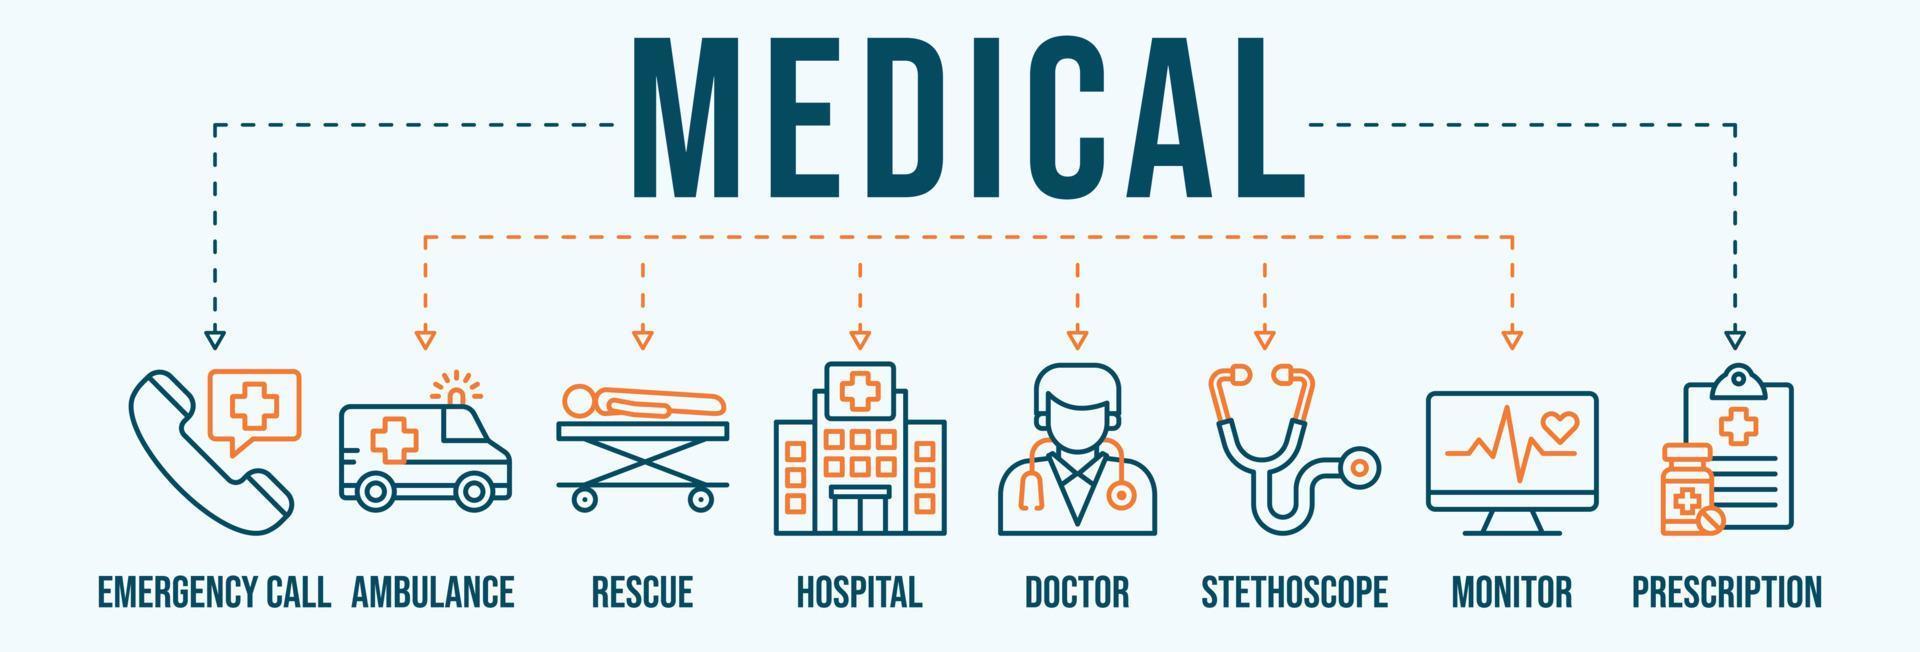 medicinsk baner webb ikon vektor illustration för nödsituation ringa upp, ambulans, rädda, sjukhus, läkare, stetoskop, övervaka och recept